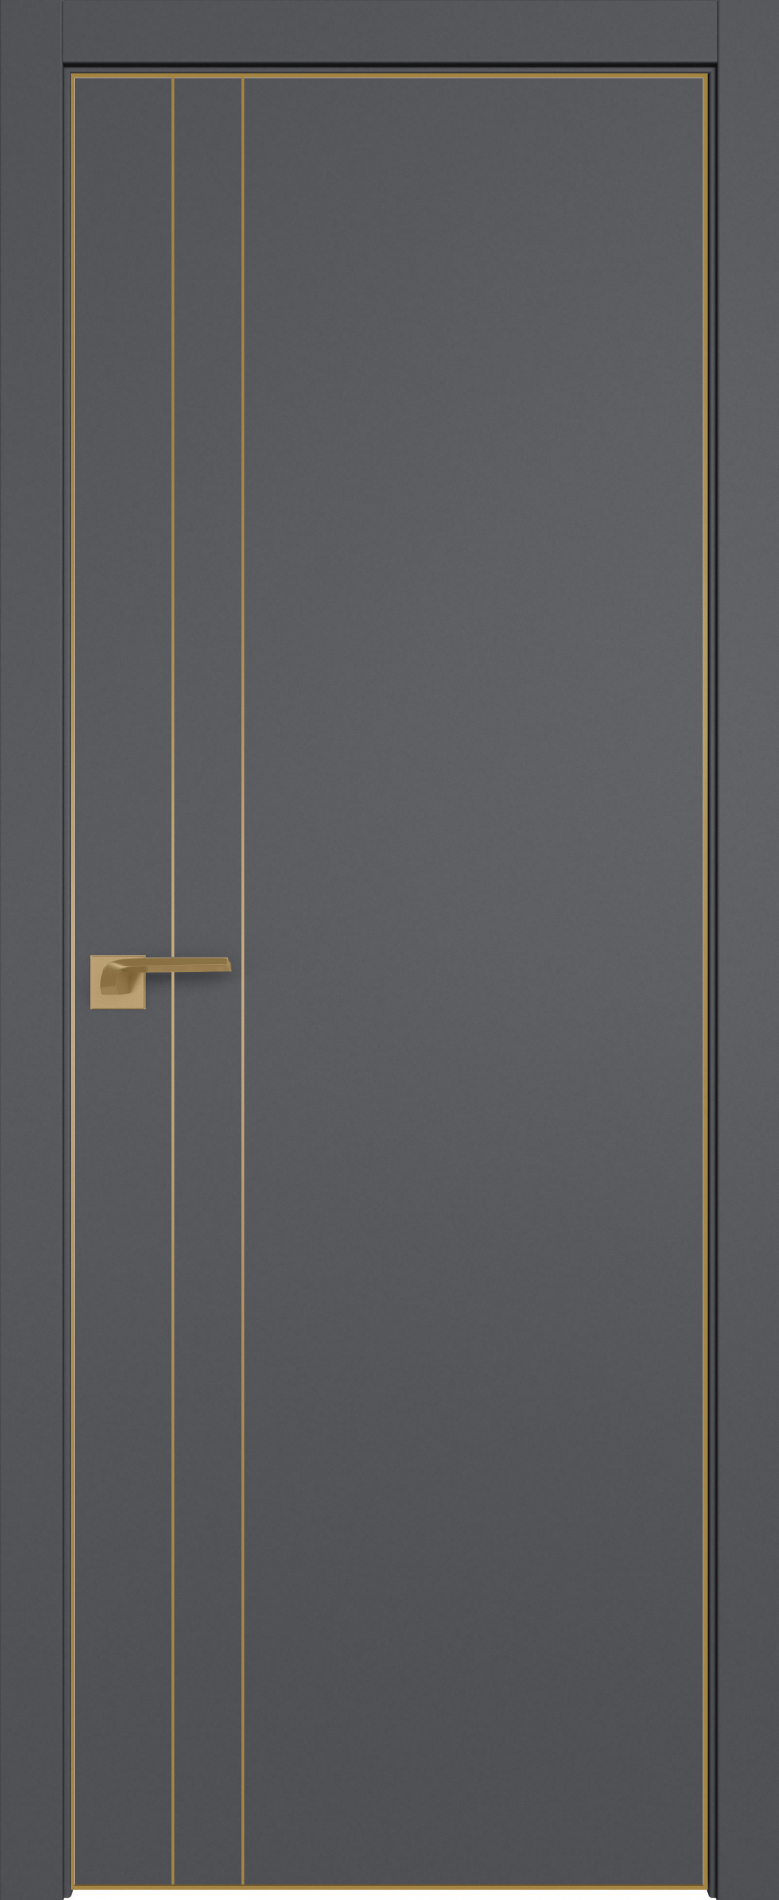 межкомнатные двери  Profil Doors 42SMK серый матовый